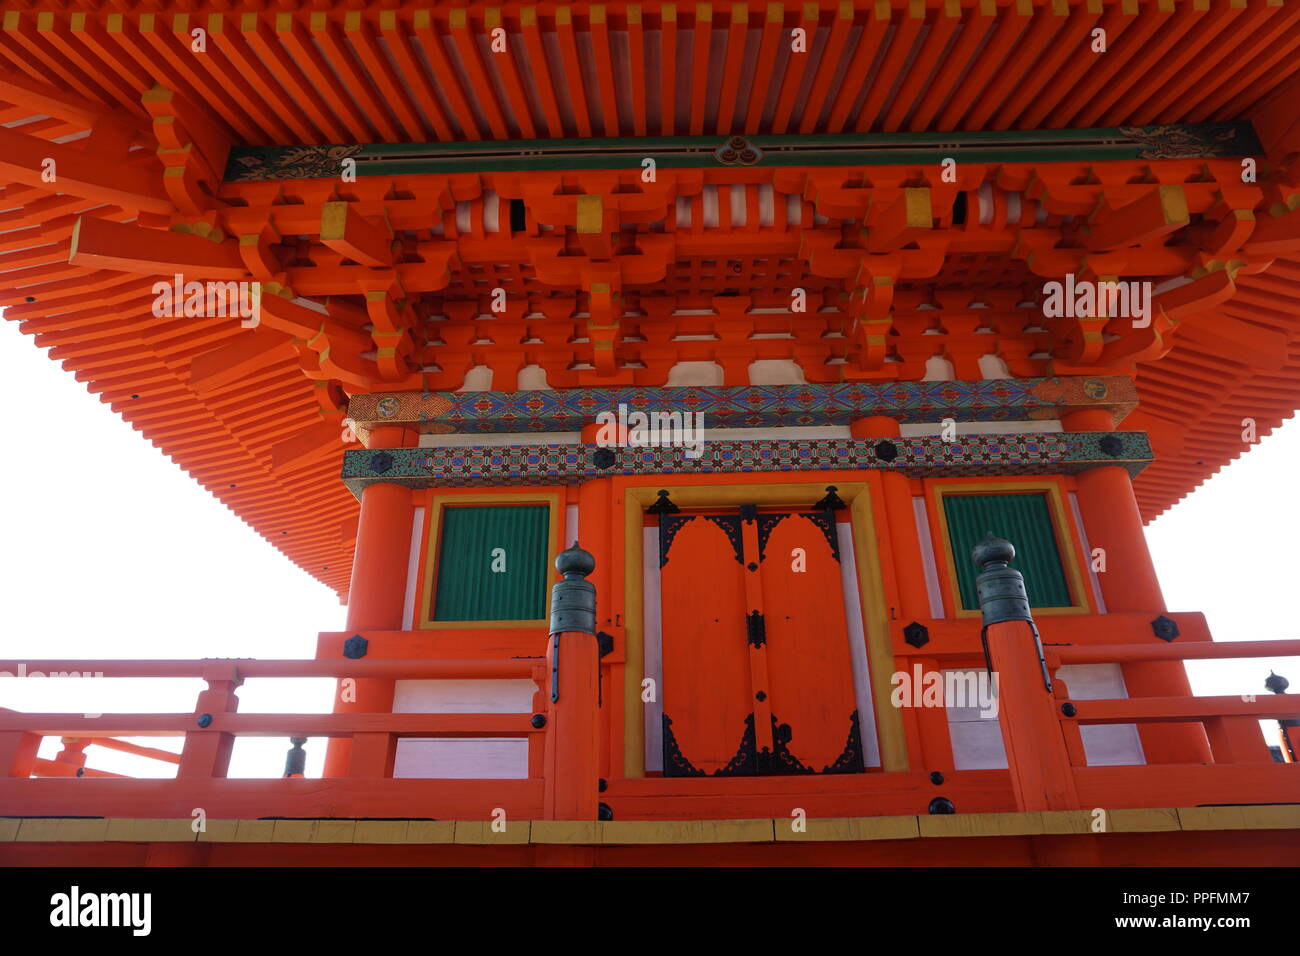 Kyoto, Giappone - Agosto 01, 2018: la prima storia di tre piani pagoda di Kiyomizu-dera tempio buddista, un patrimonio mondiale UNESCO. Foto Stock